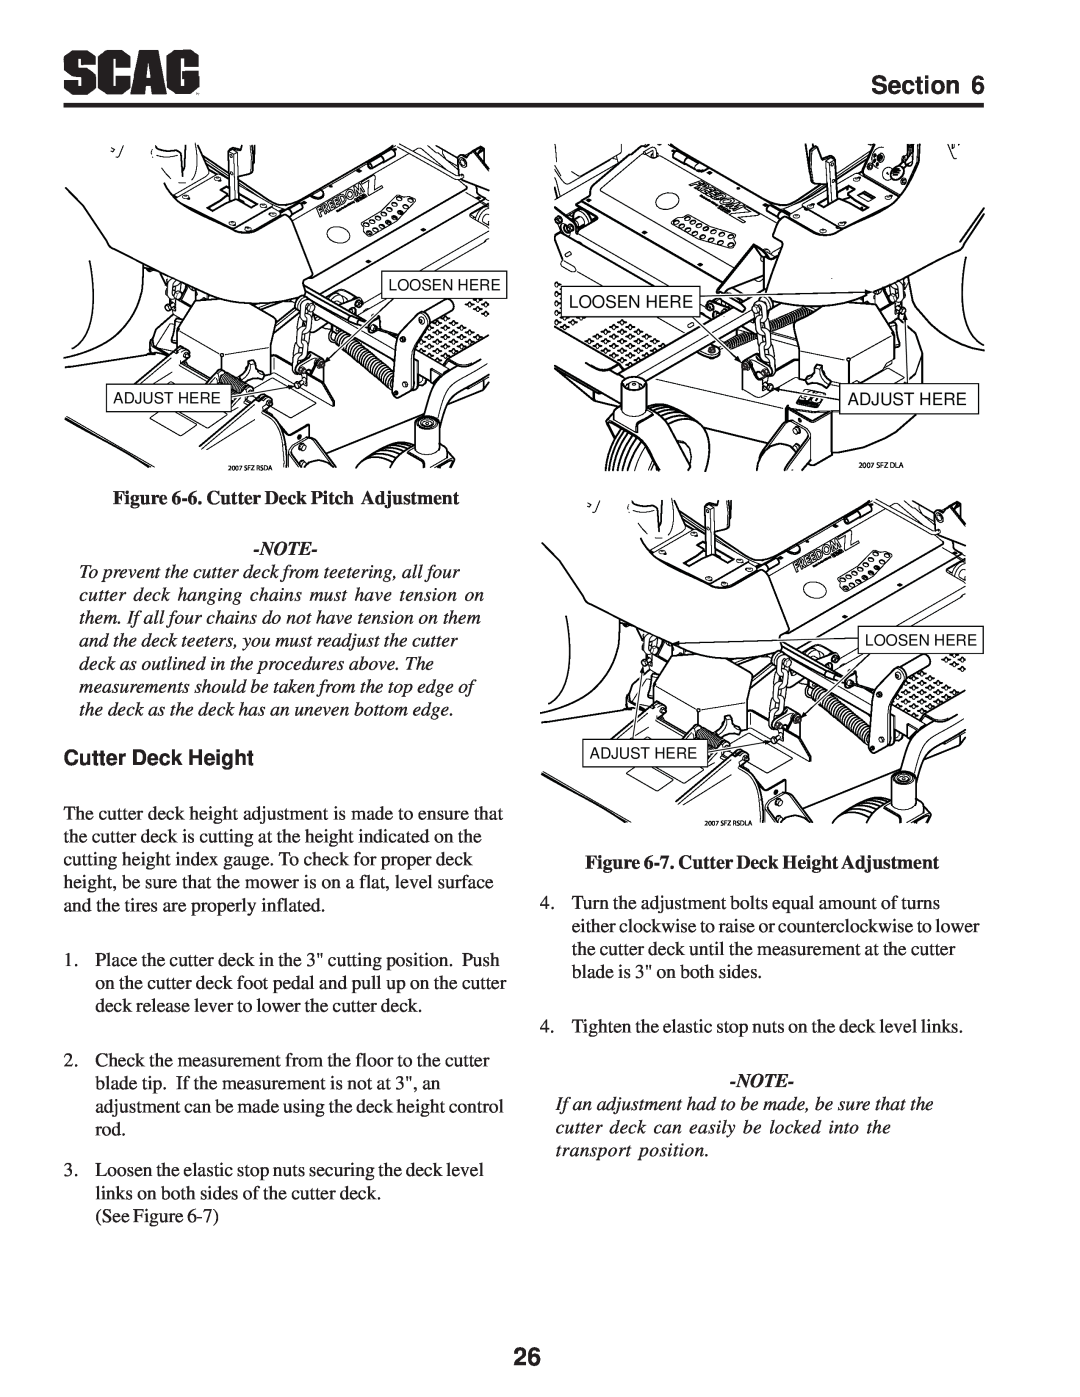 Scag Power Equipment SFZ manual 6. Cutter Deck Pitch Adjustment, 7. Cutter Deck Height Adjustment 